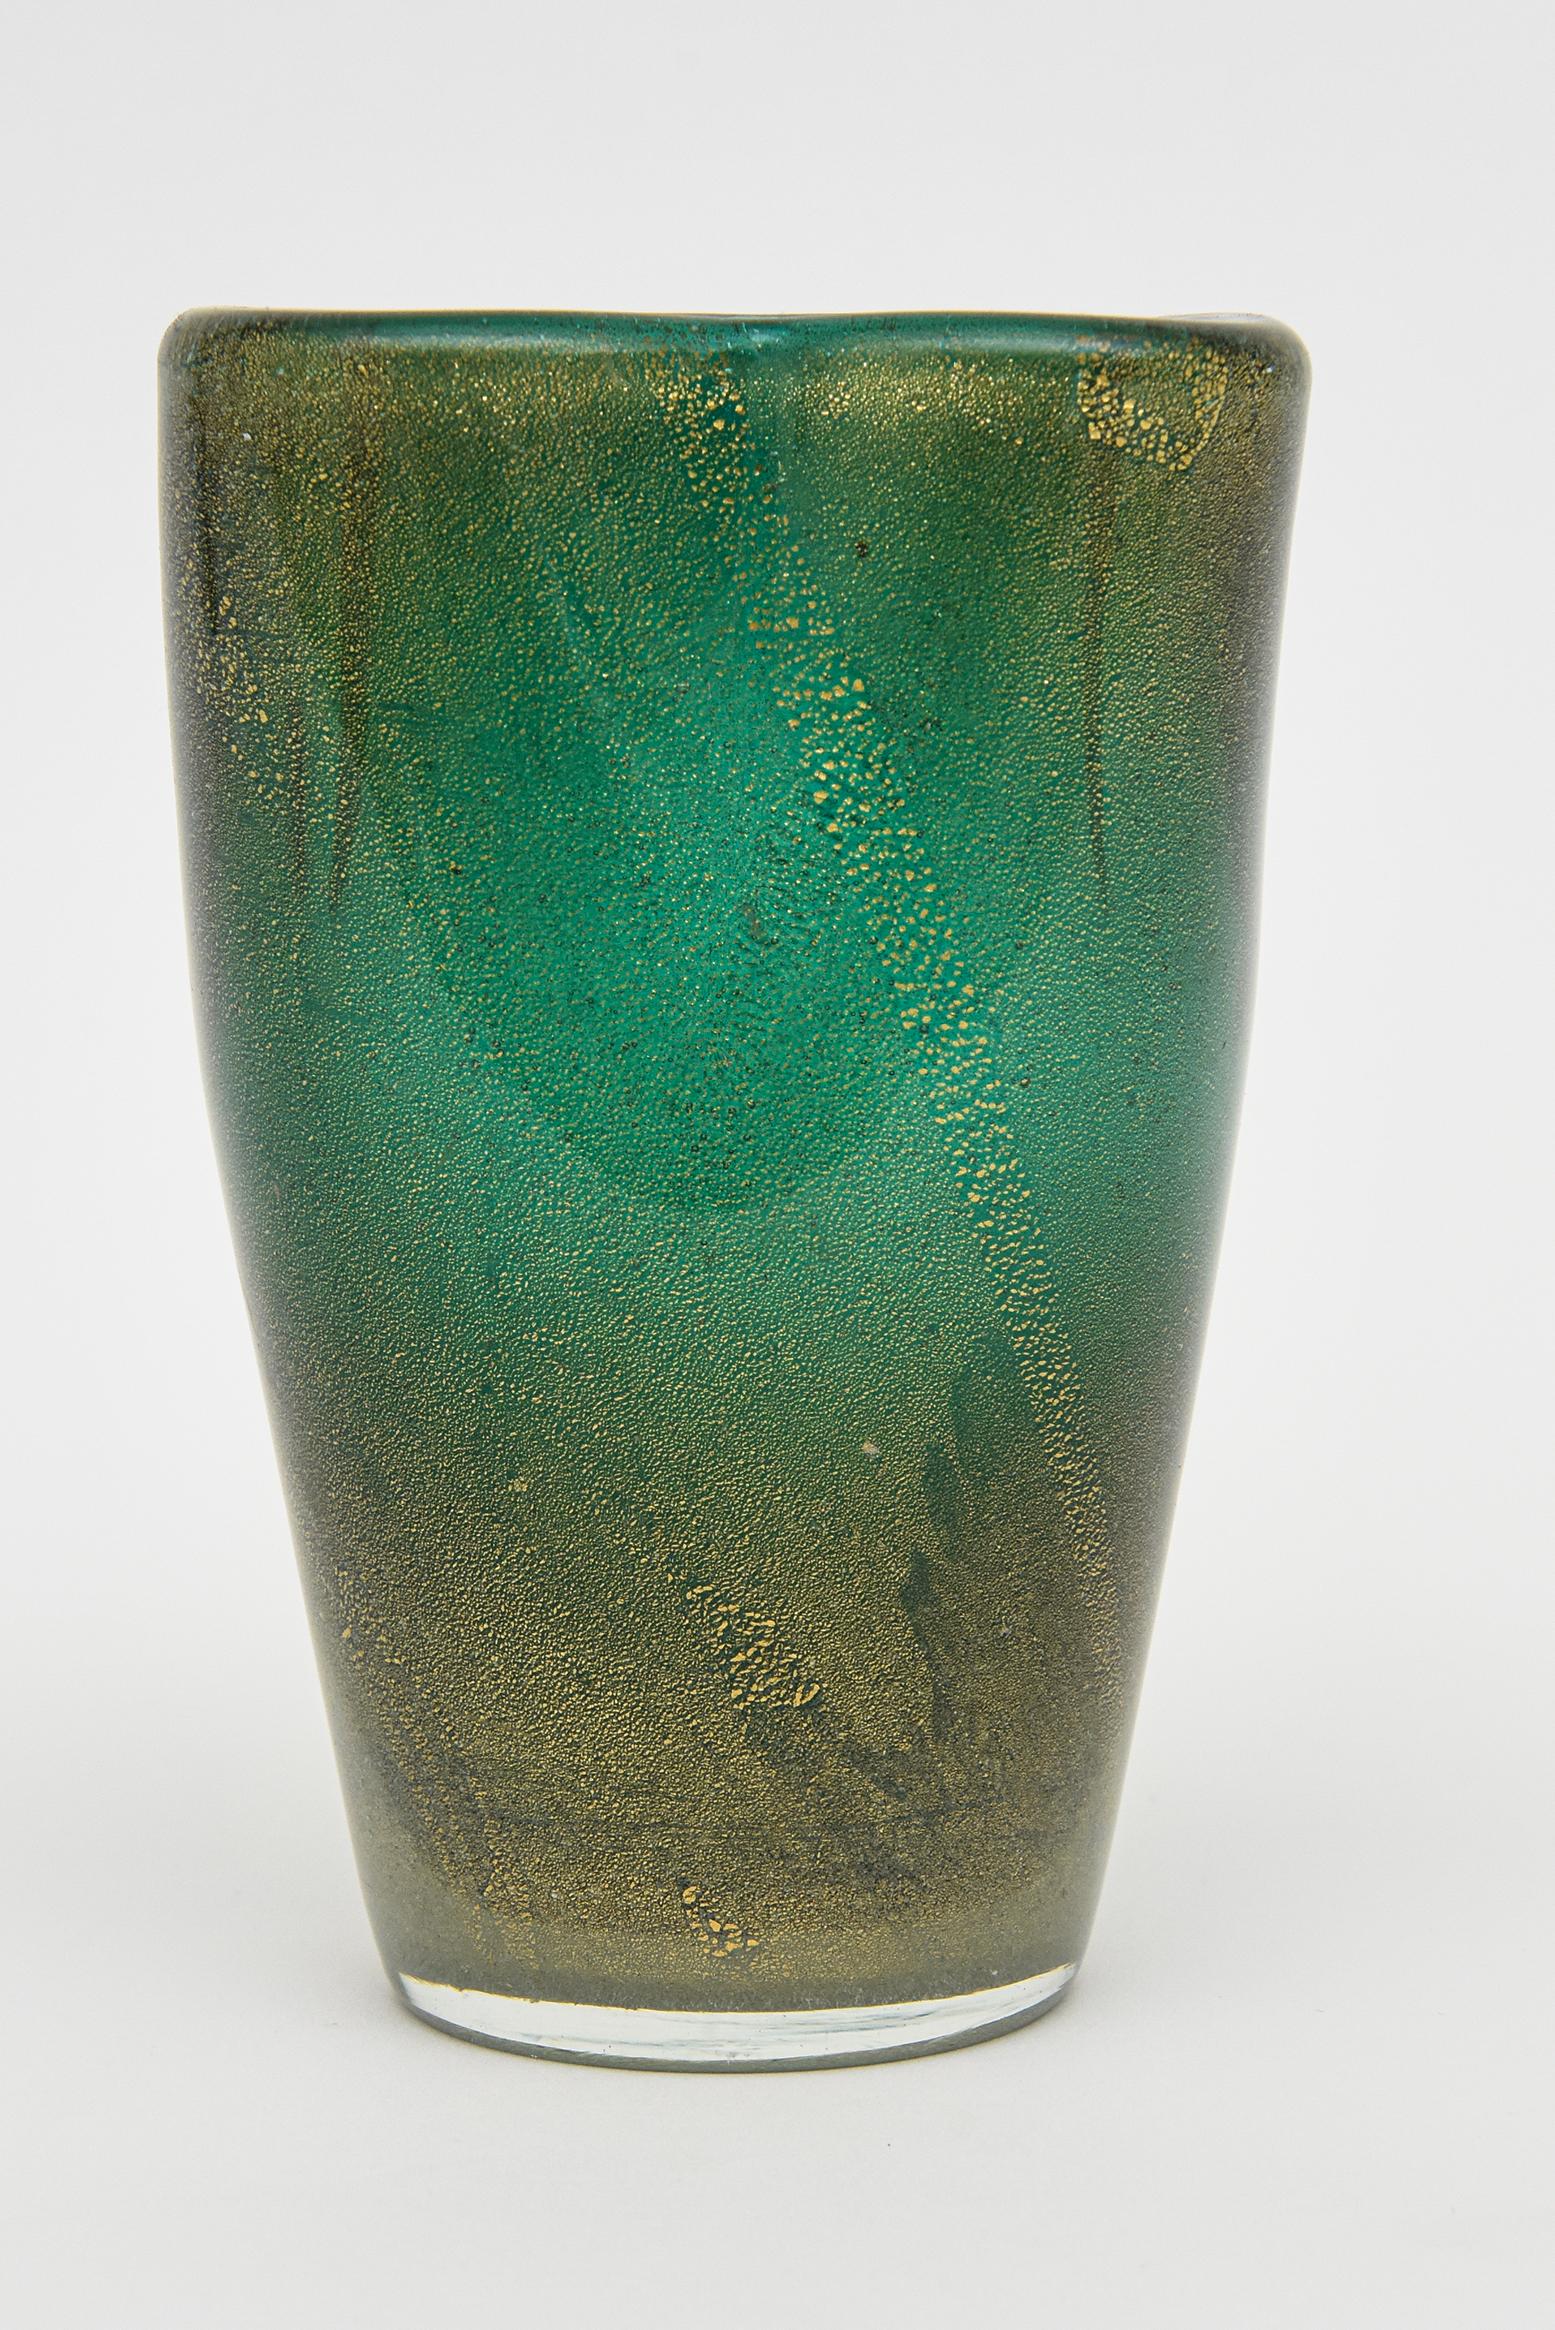 Diese schöne Vintage Murano Barovier et Toso mundgeblasenem Glas Vase oder Gefäß ist Mitte des Jahrhunderts modern. Die Farben sind meergrüner Smaragd mit reichlich goldenem Aventurin durchsetzt. An der Oberseite befinden sich in Falten gelegte